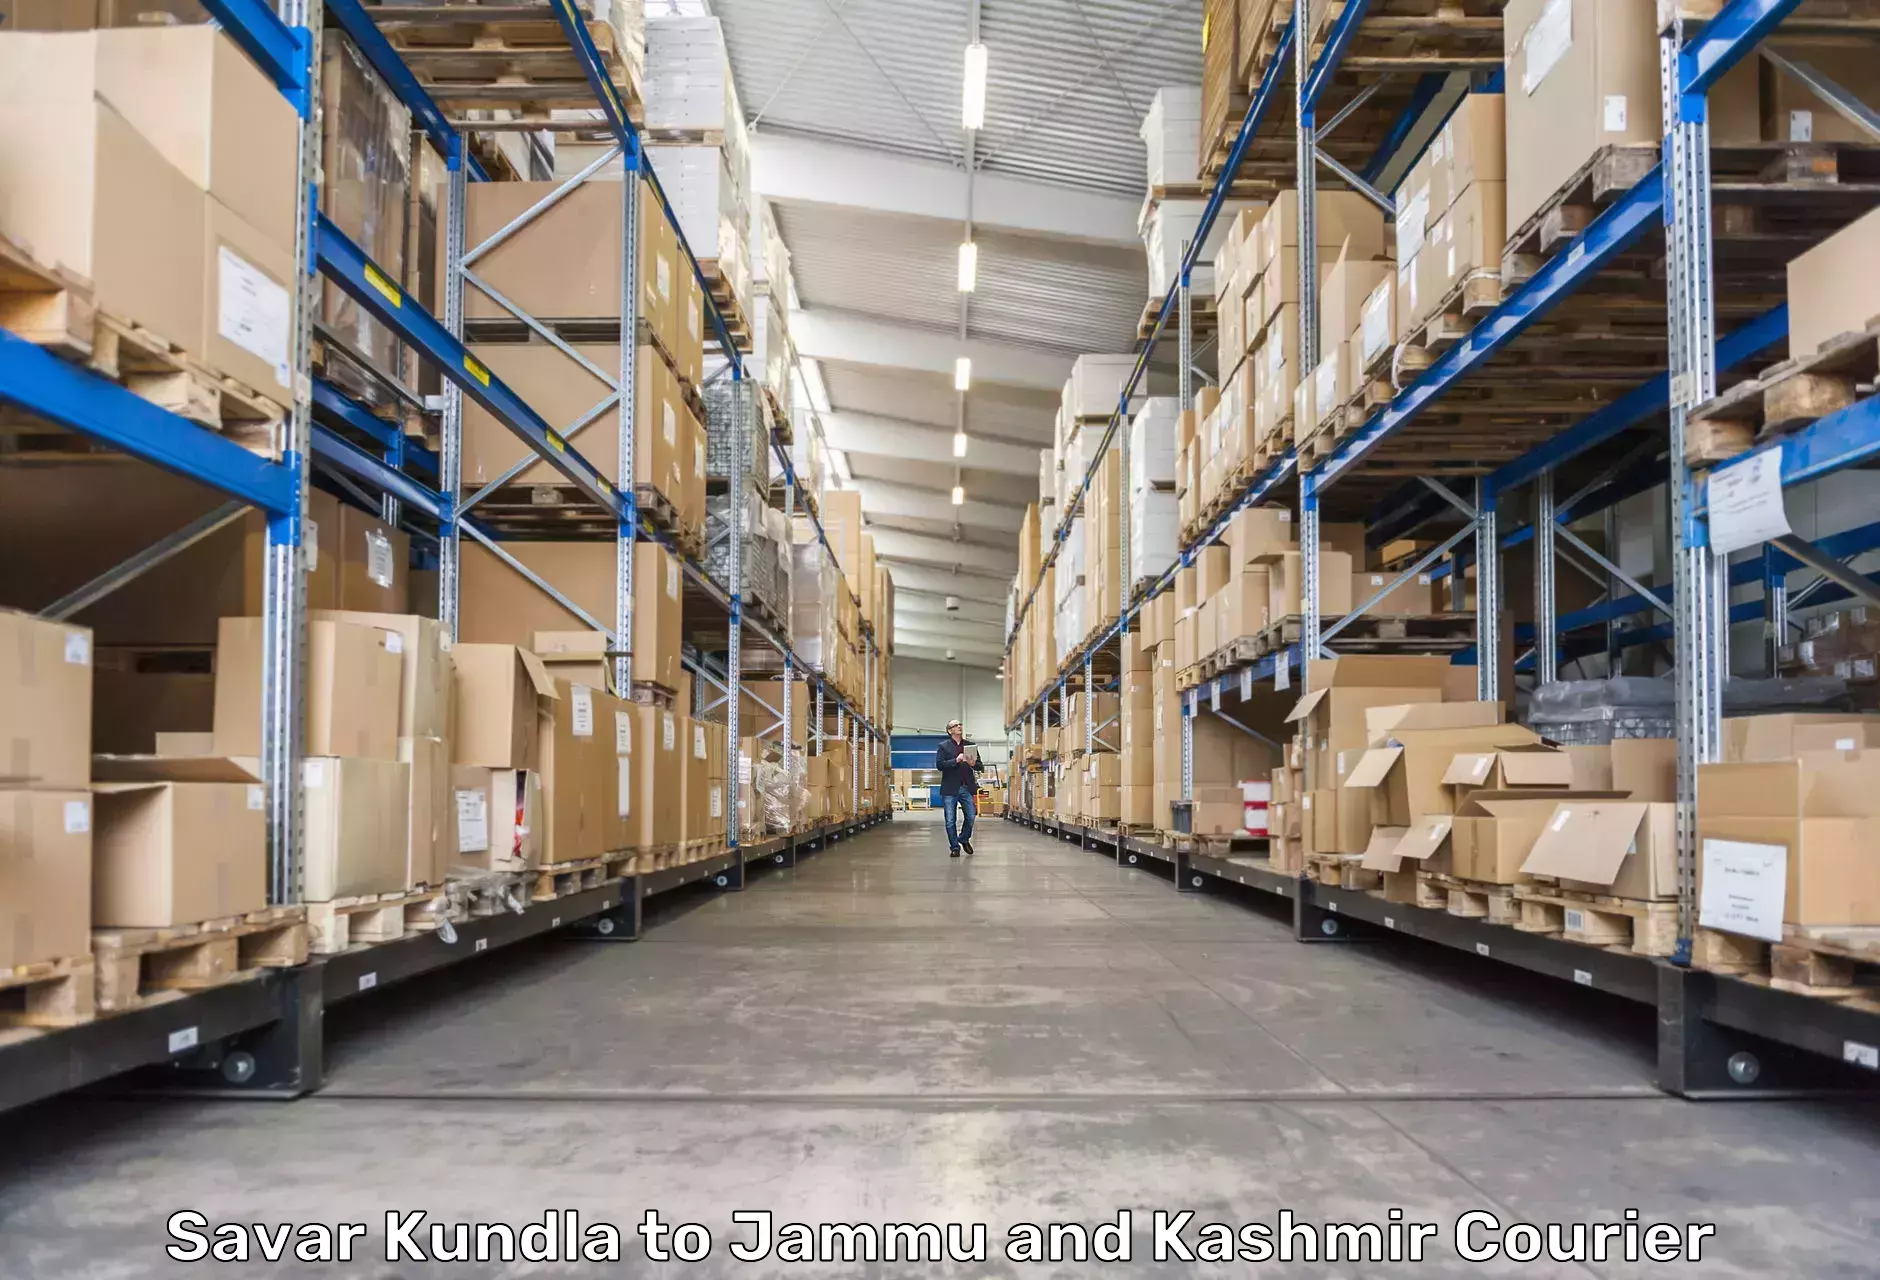 Business shipping needs Savar Kundla to Sunderbani